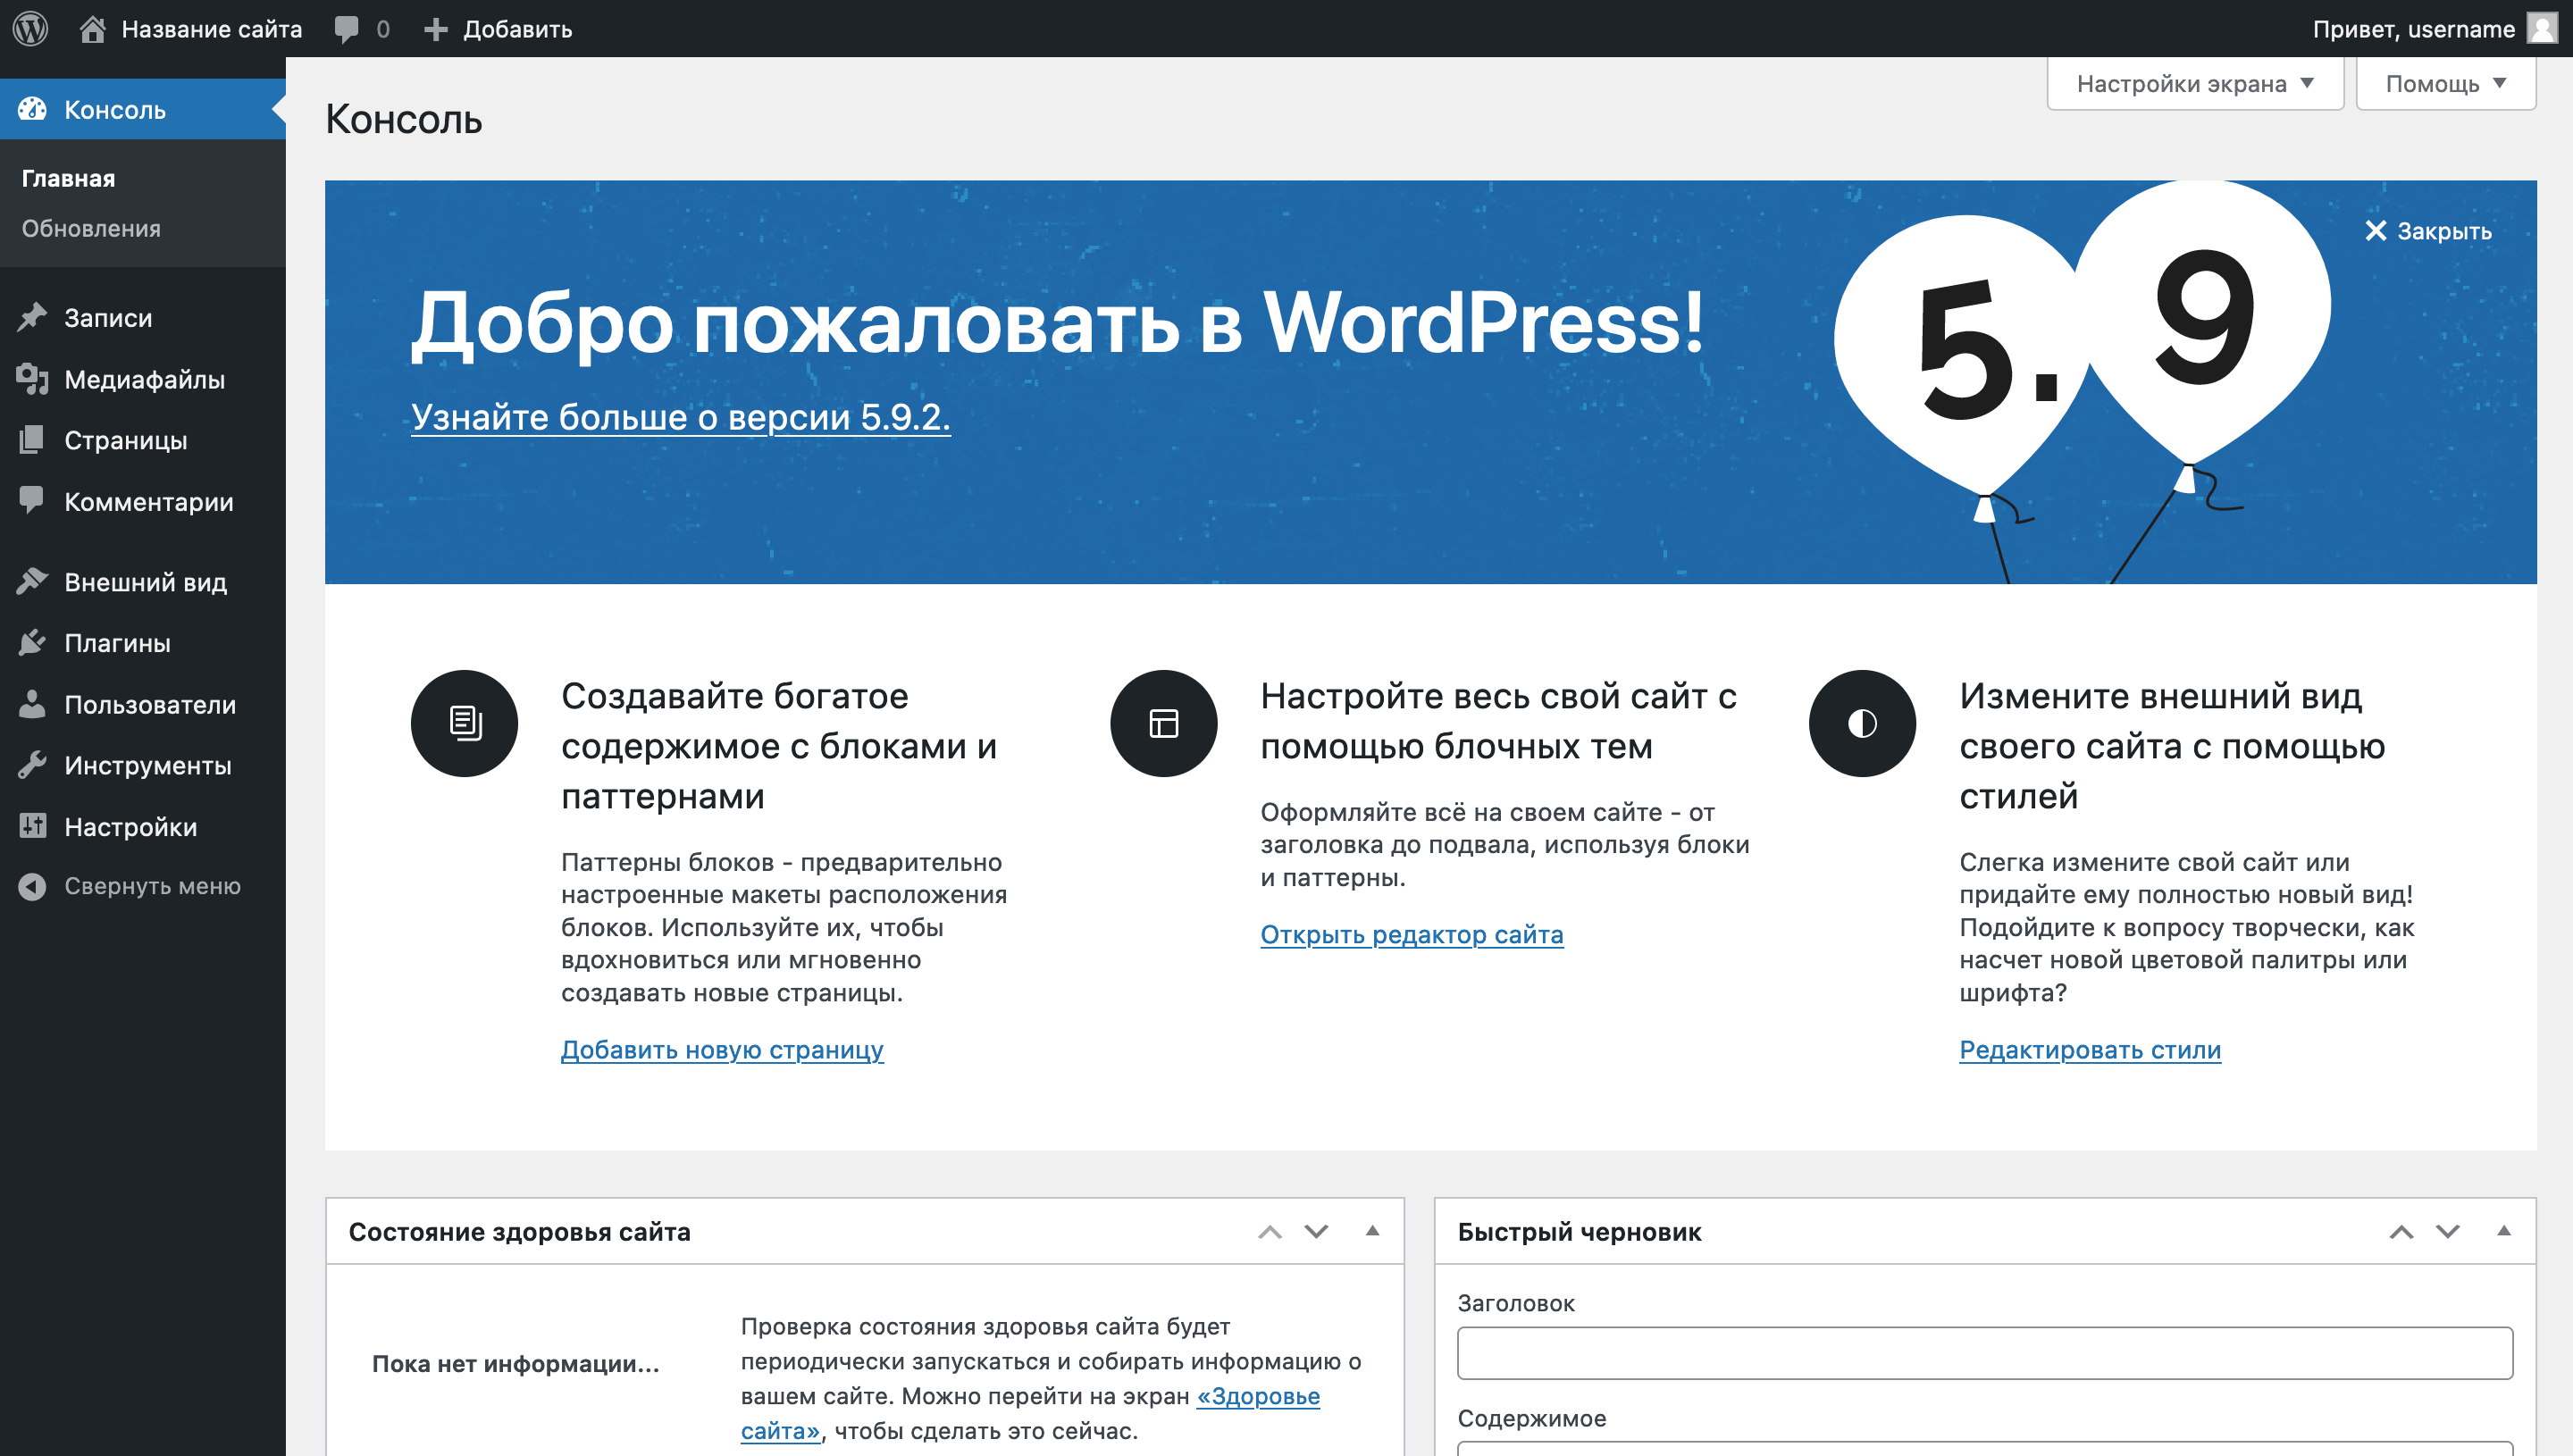 Как работать в WordPress — Домашняя страница консоли WordPress